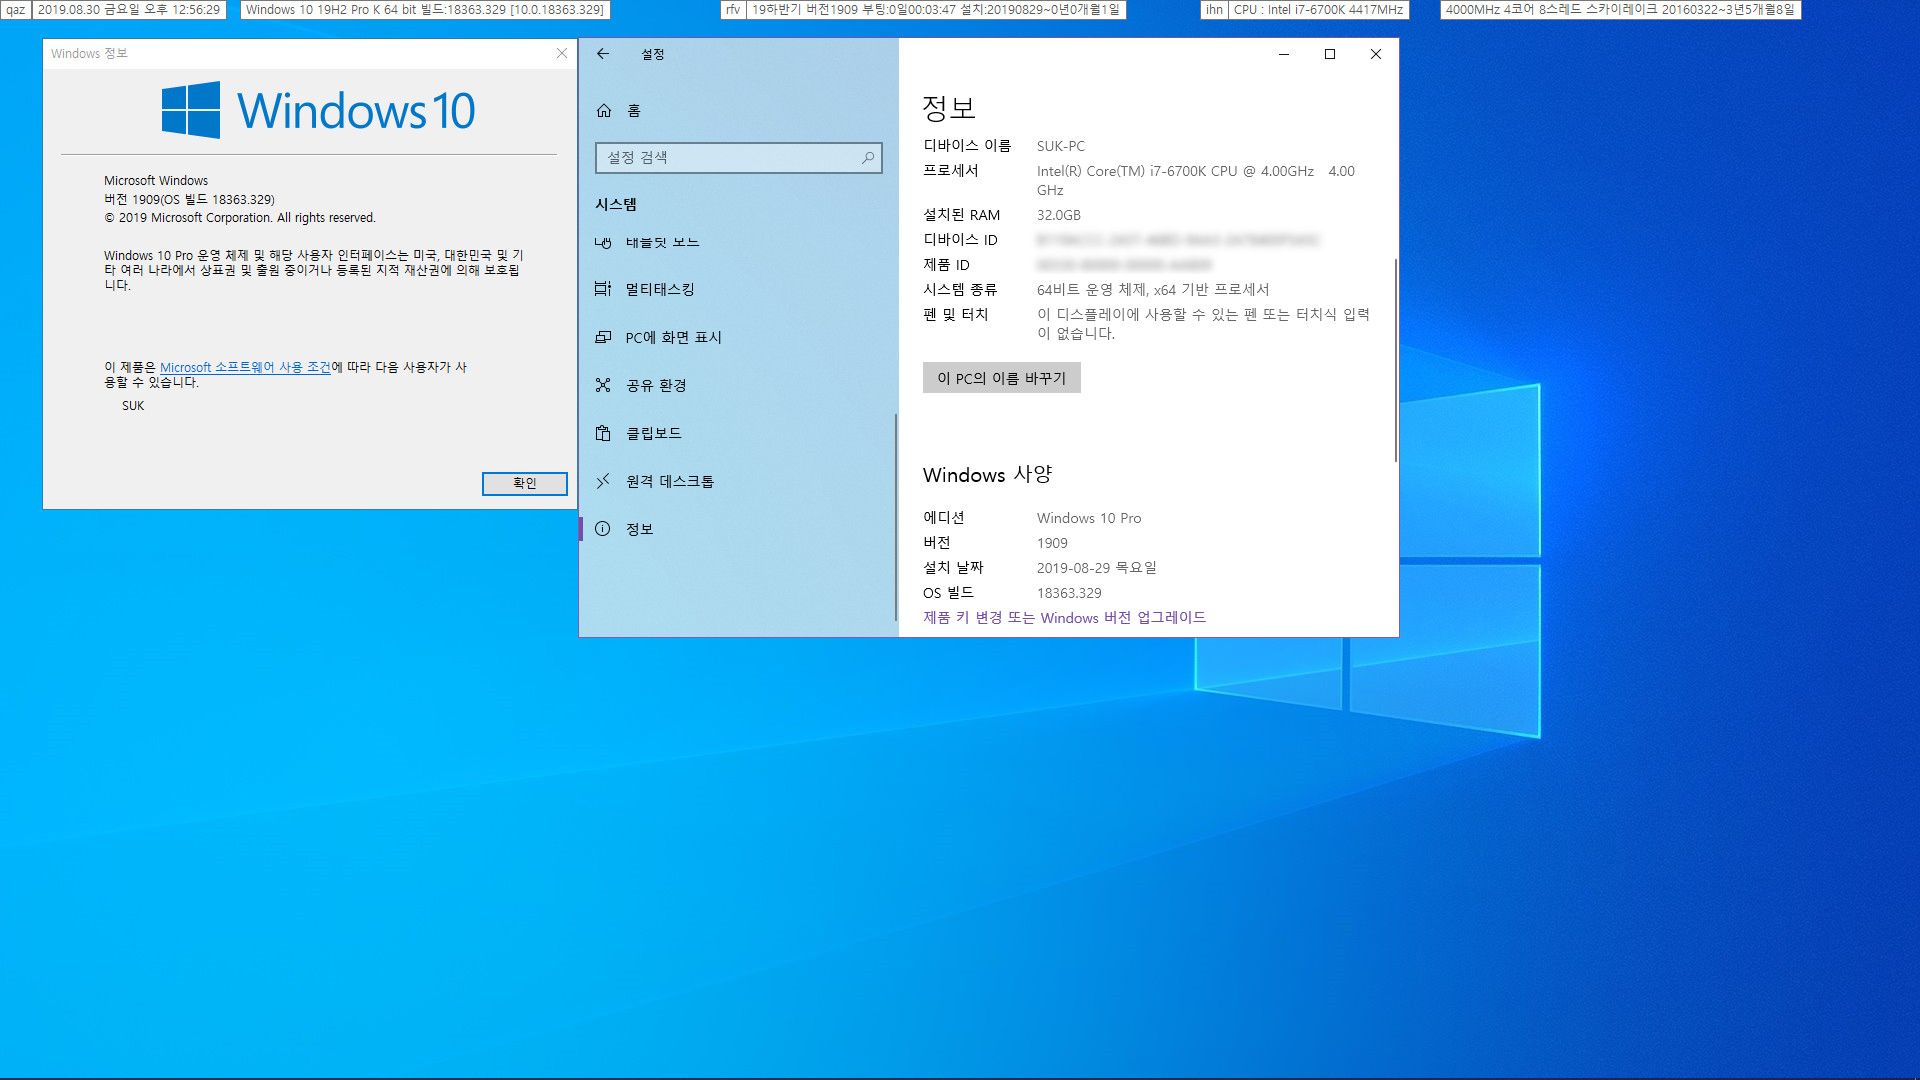 Windows 10 버전 1909 (OS 빌드 18363.329) [2019-08-29 일자] 릴리스 프리뷰 나왔네요 - 실컴에 설치 - 서비스 스택 업데이트는 이전과 같기 때문에 누적 업데이트만 설치했습니다 [성공] 2019-08-30_125630.jpg